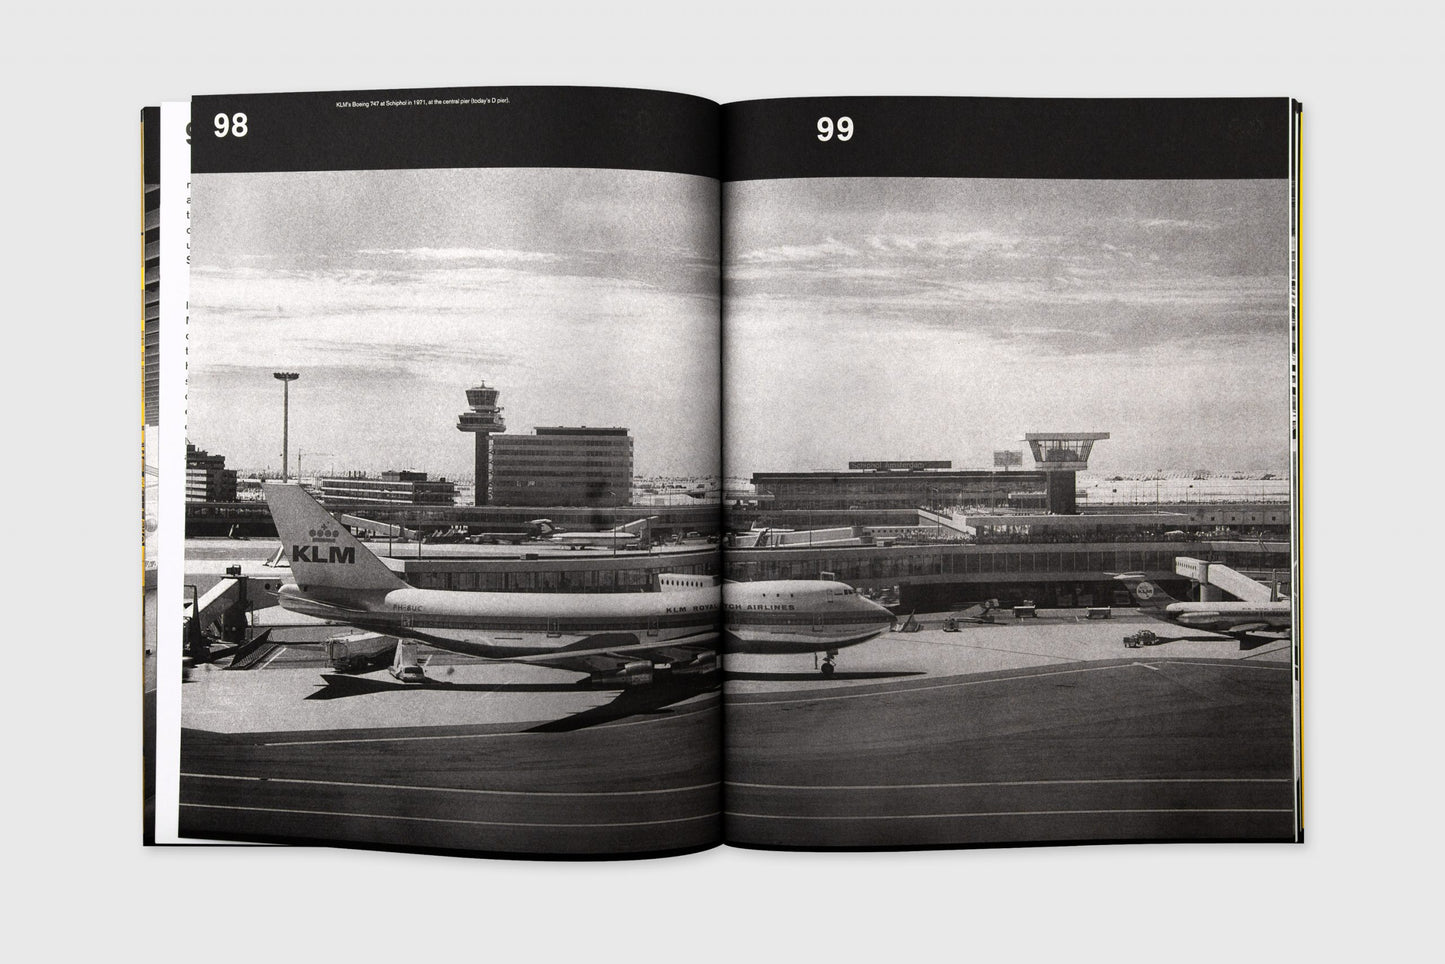 Schiphol: Groundbreaking Airport Design 1967-1975